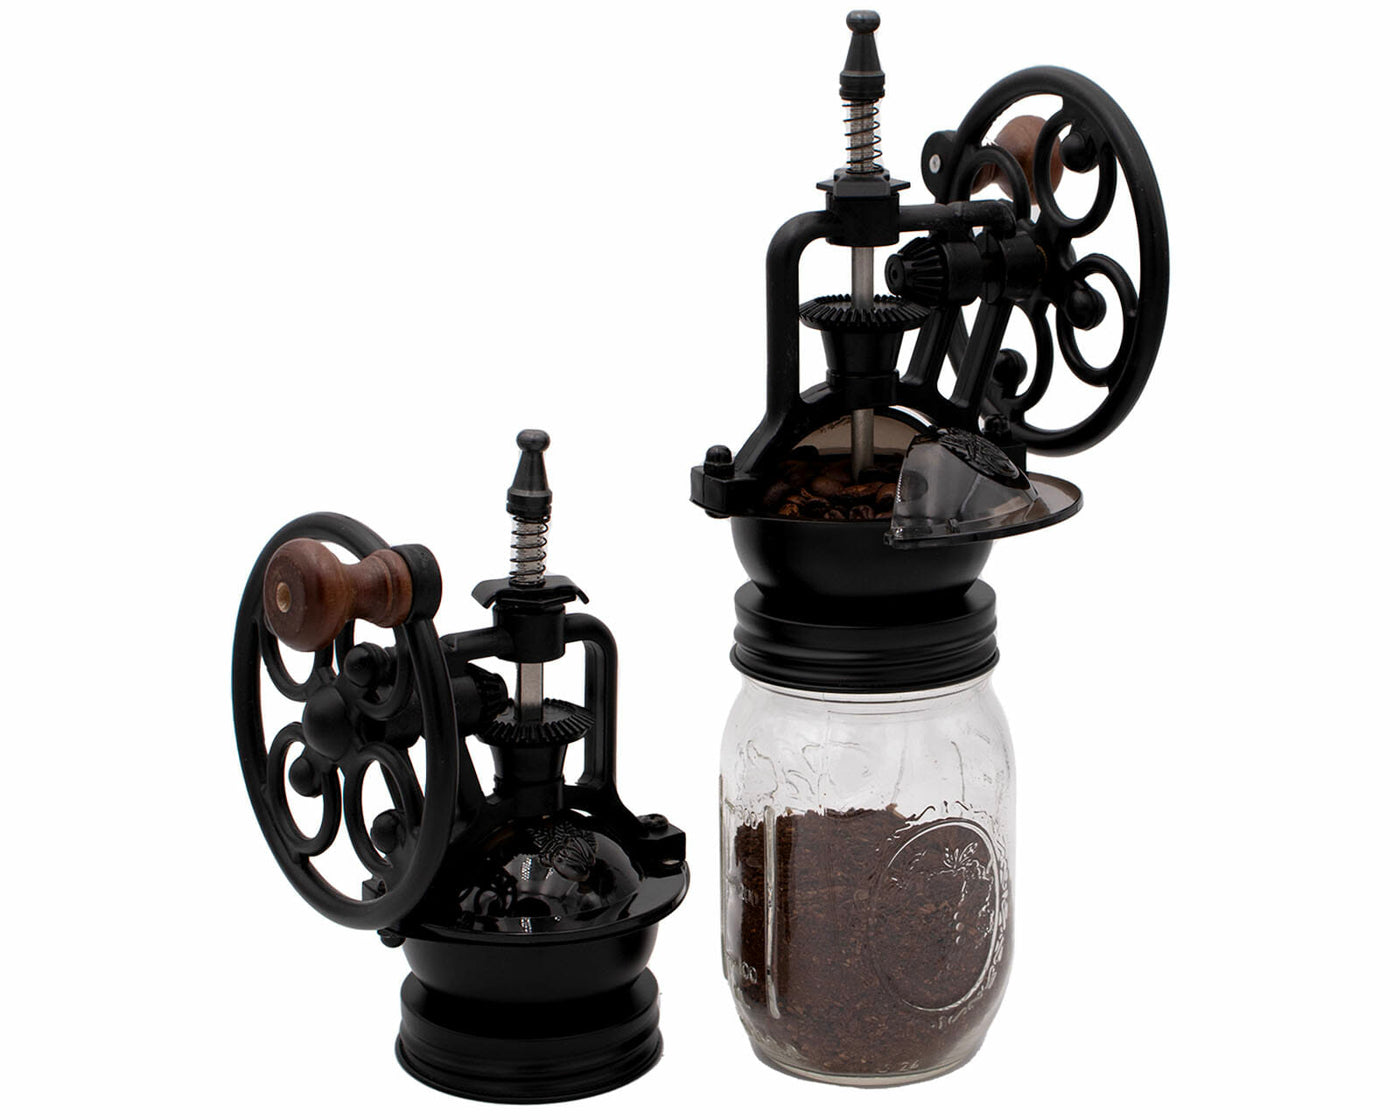 Manual Coffee Grinder Vintage Coffee Grinder With Glass Jar Coffee